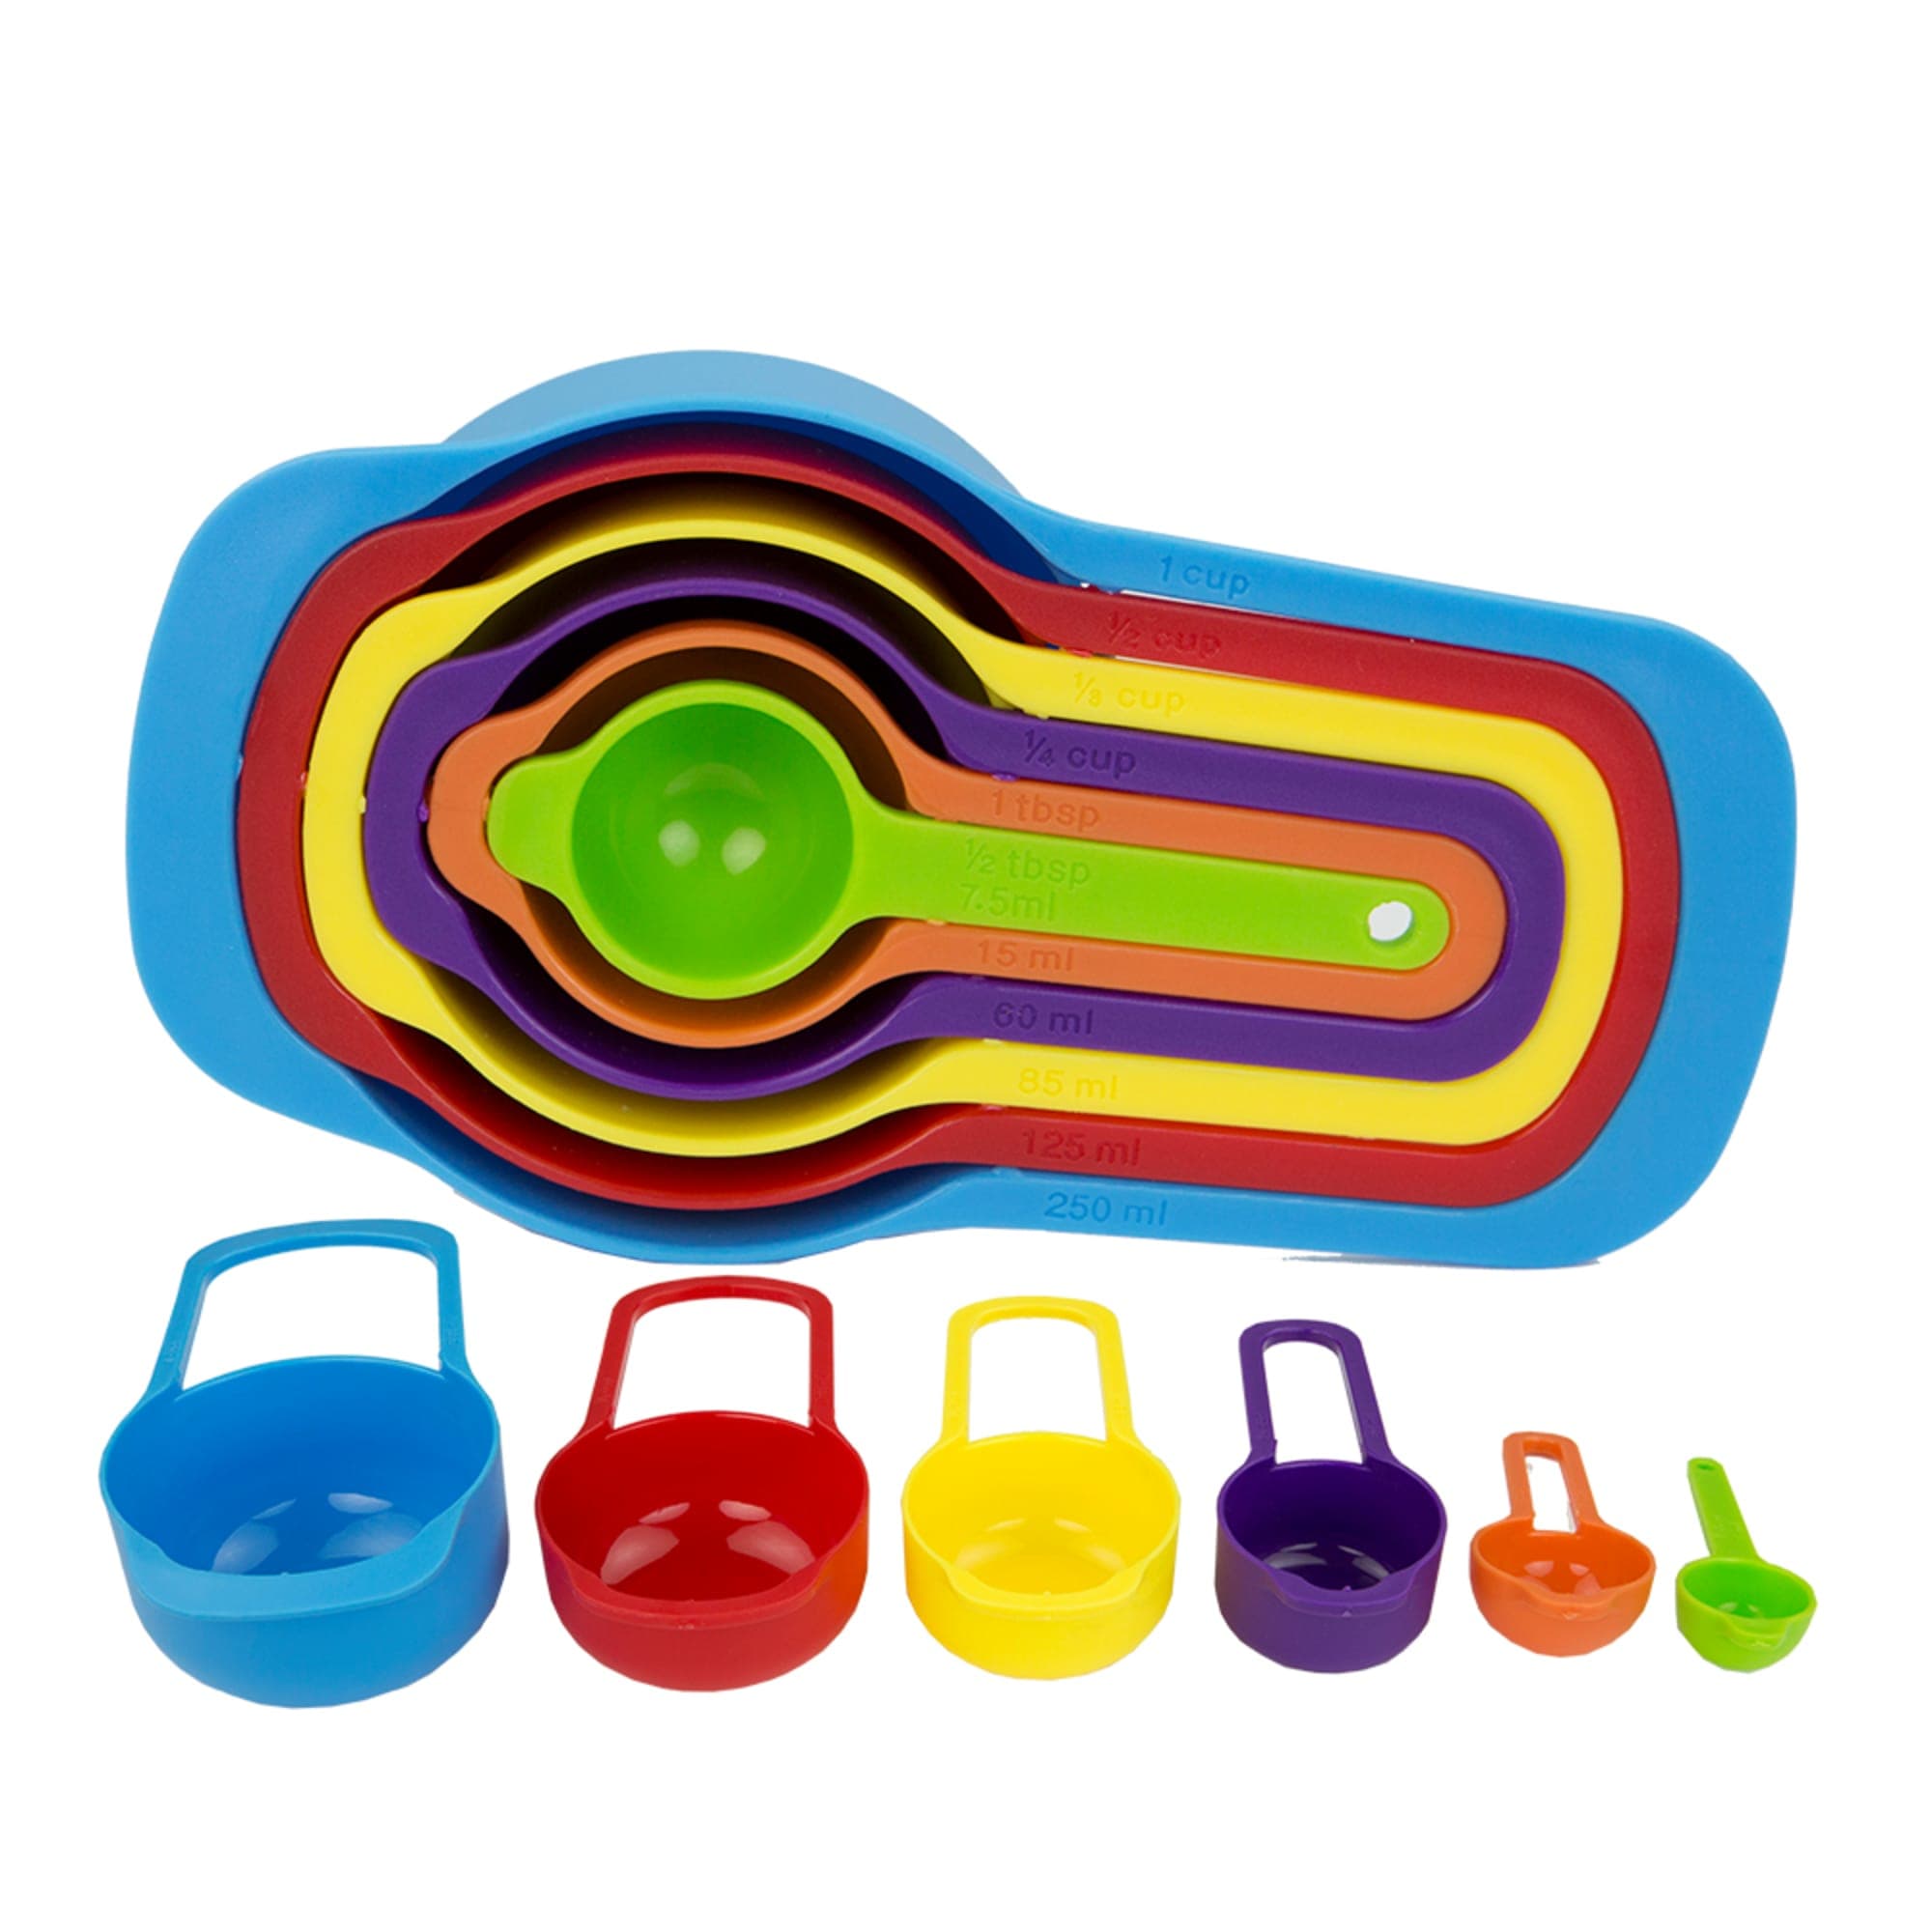 6 Piece Plastic Measuring Cup Set, Multi-Colored, FOOD PREP